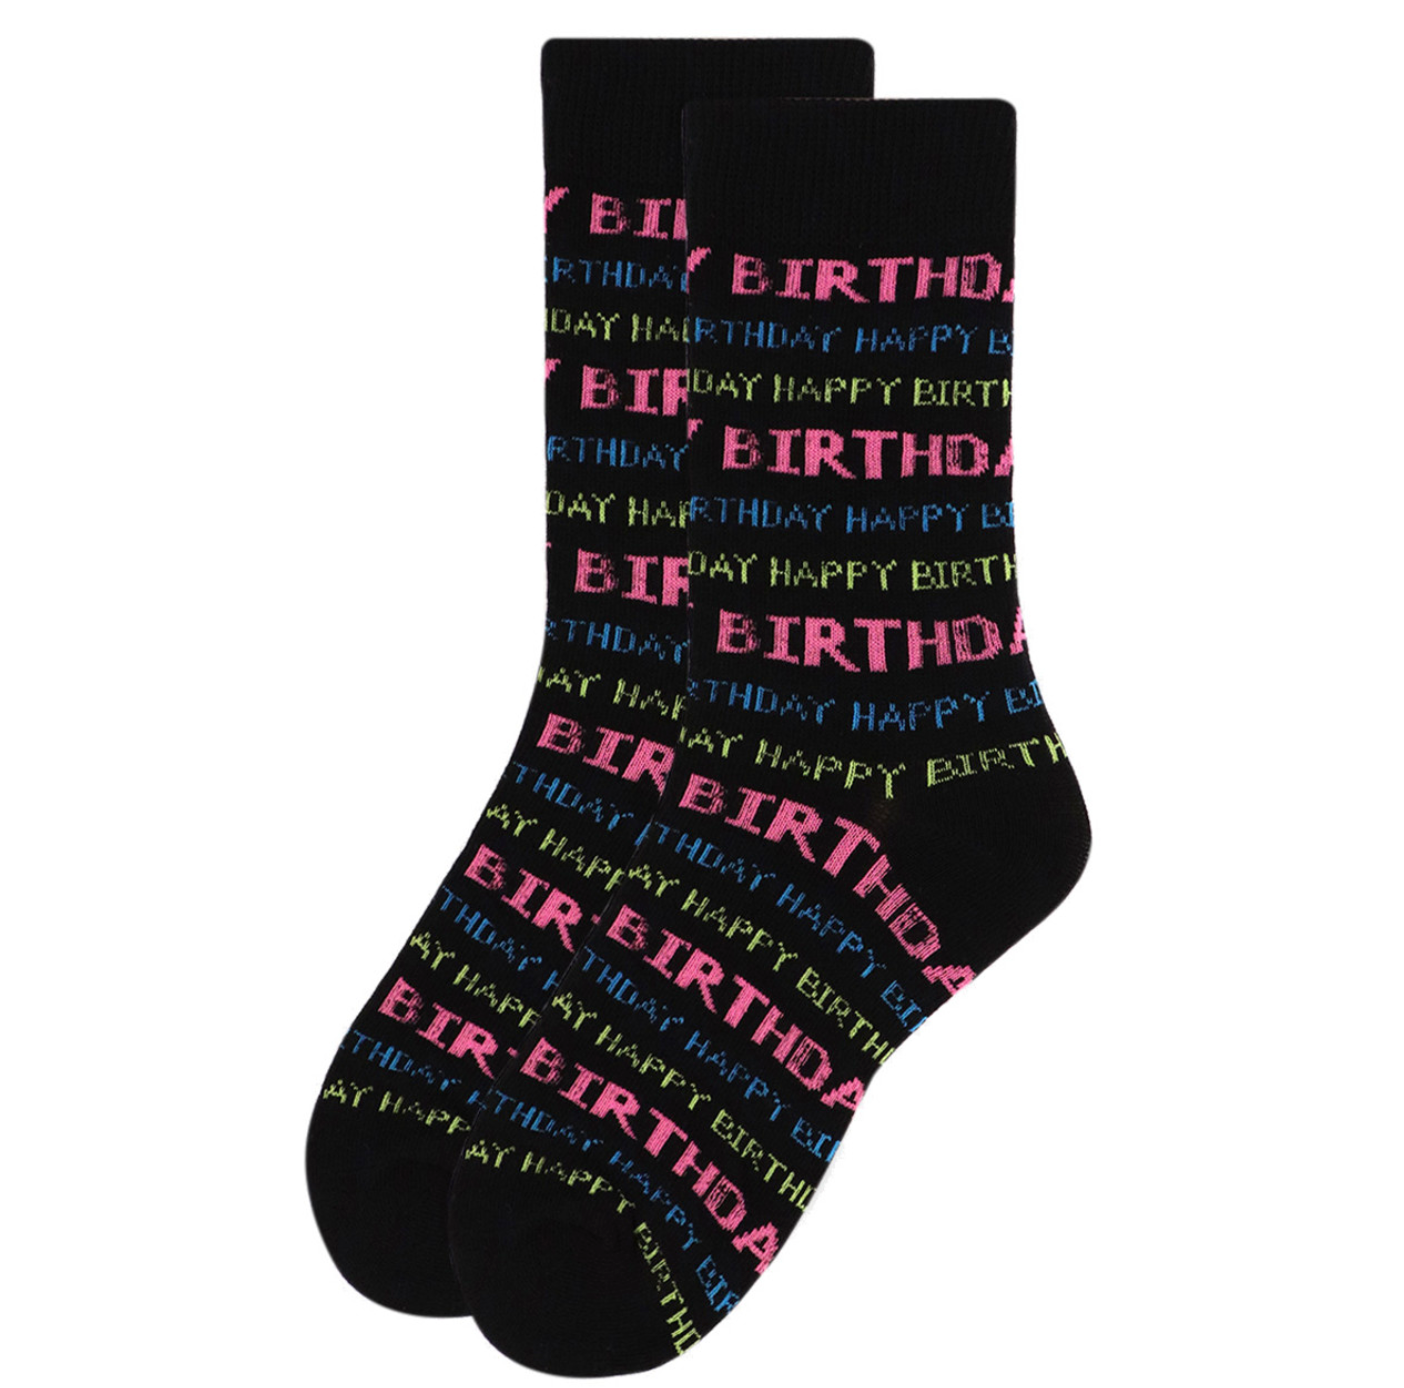 Novelty socks